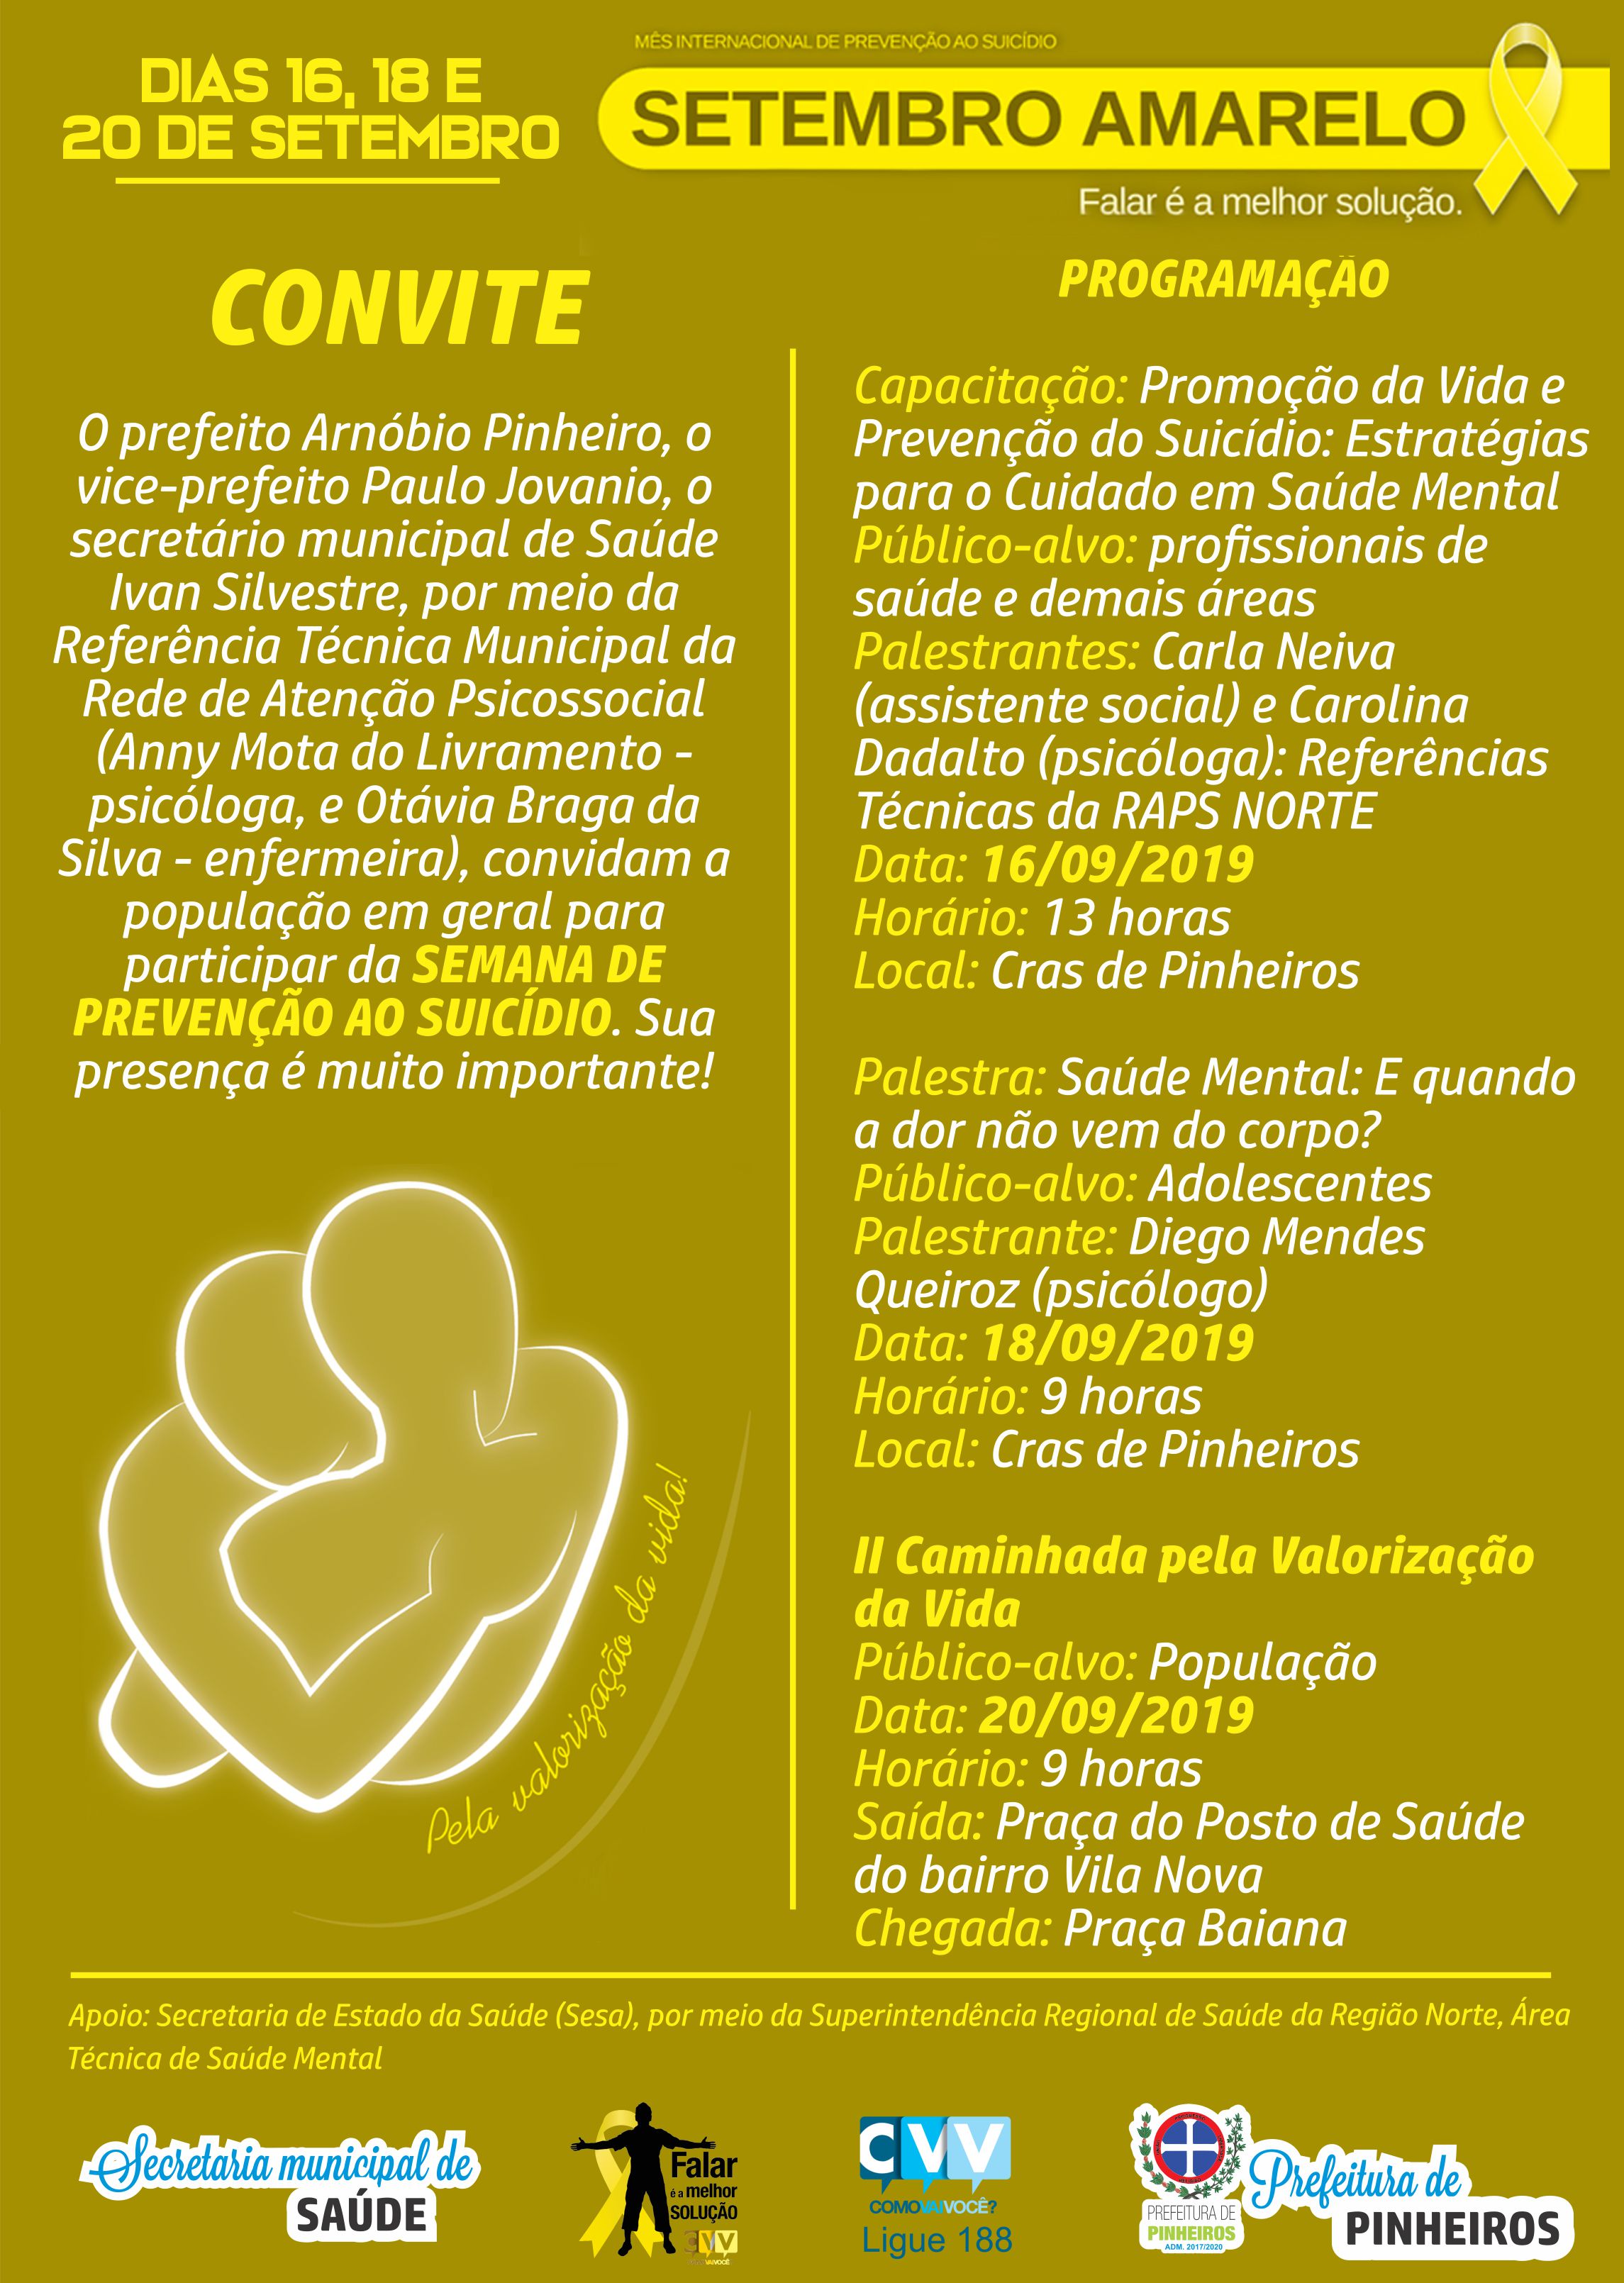 Setembro Amarelo: Pinheiros terá programação especial para Semana Municipal de Prevenção ao Suicídio